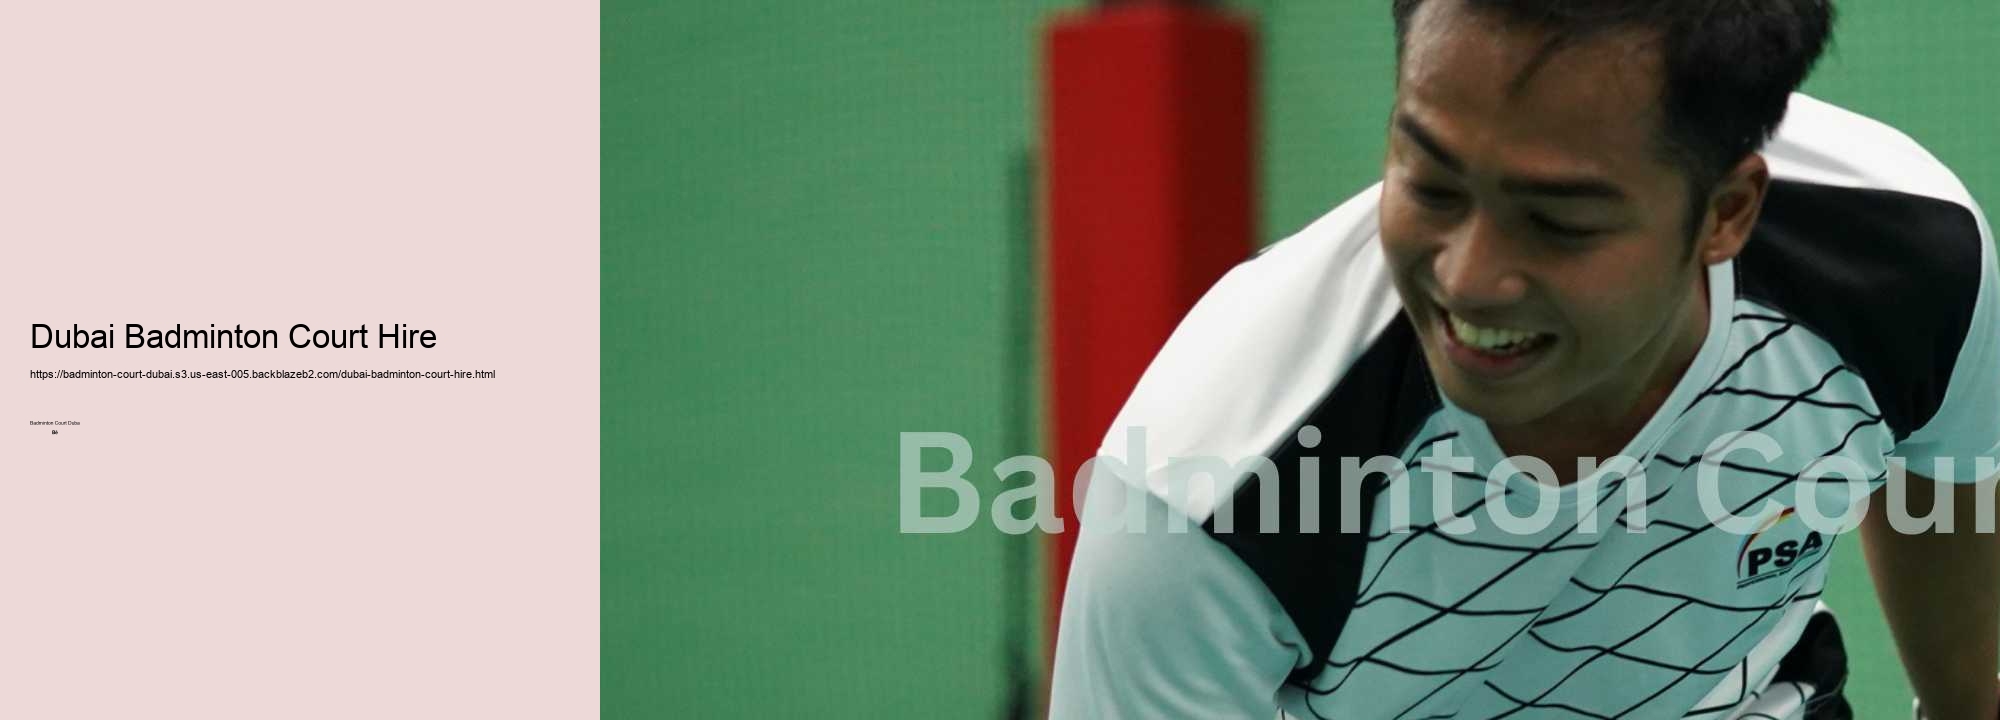 Dubai Badminton Court Hire